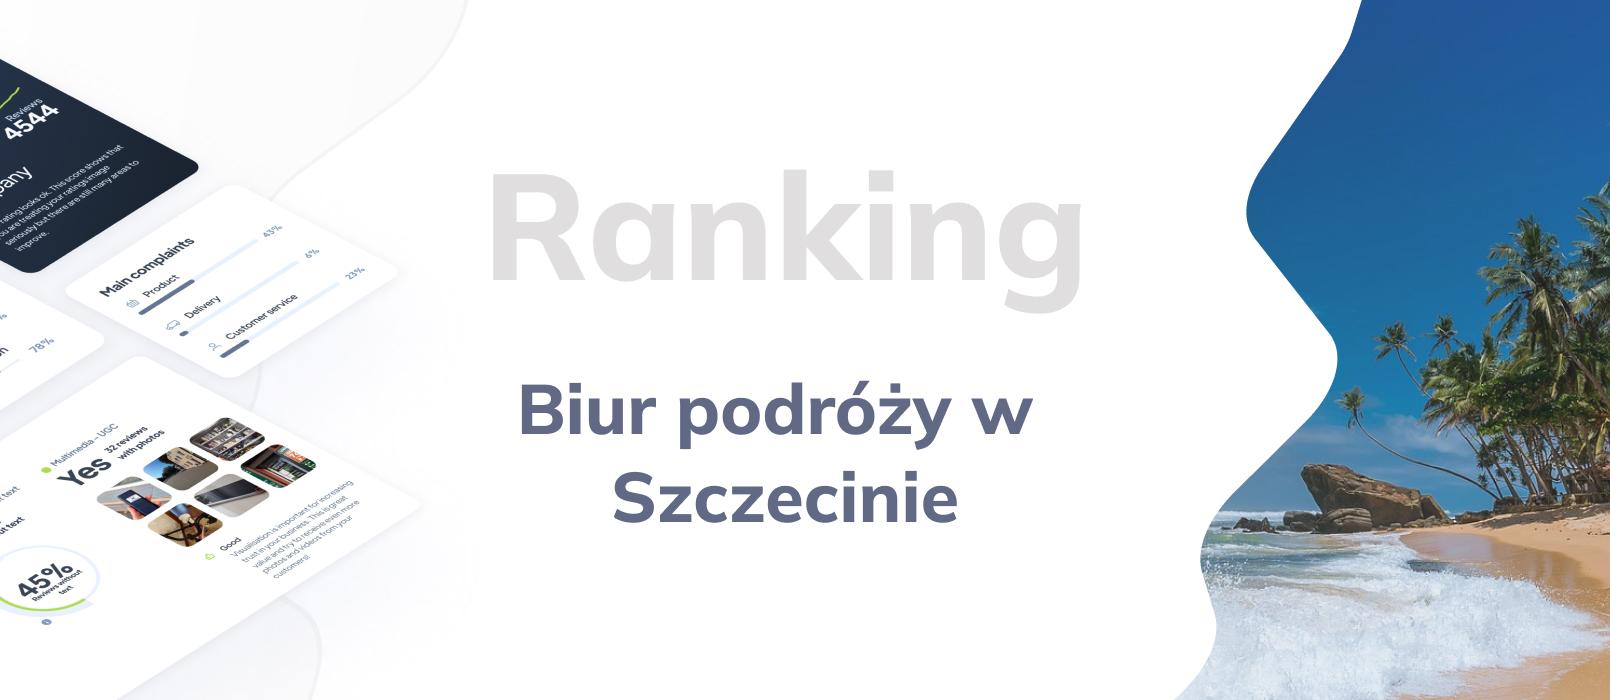 Biura podróży w Szczecinie - ranking TOP 10